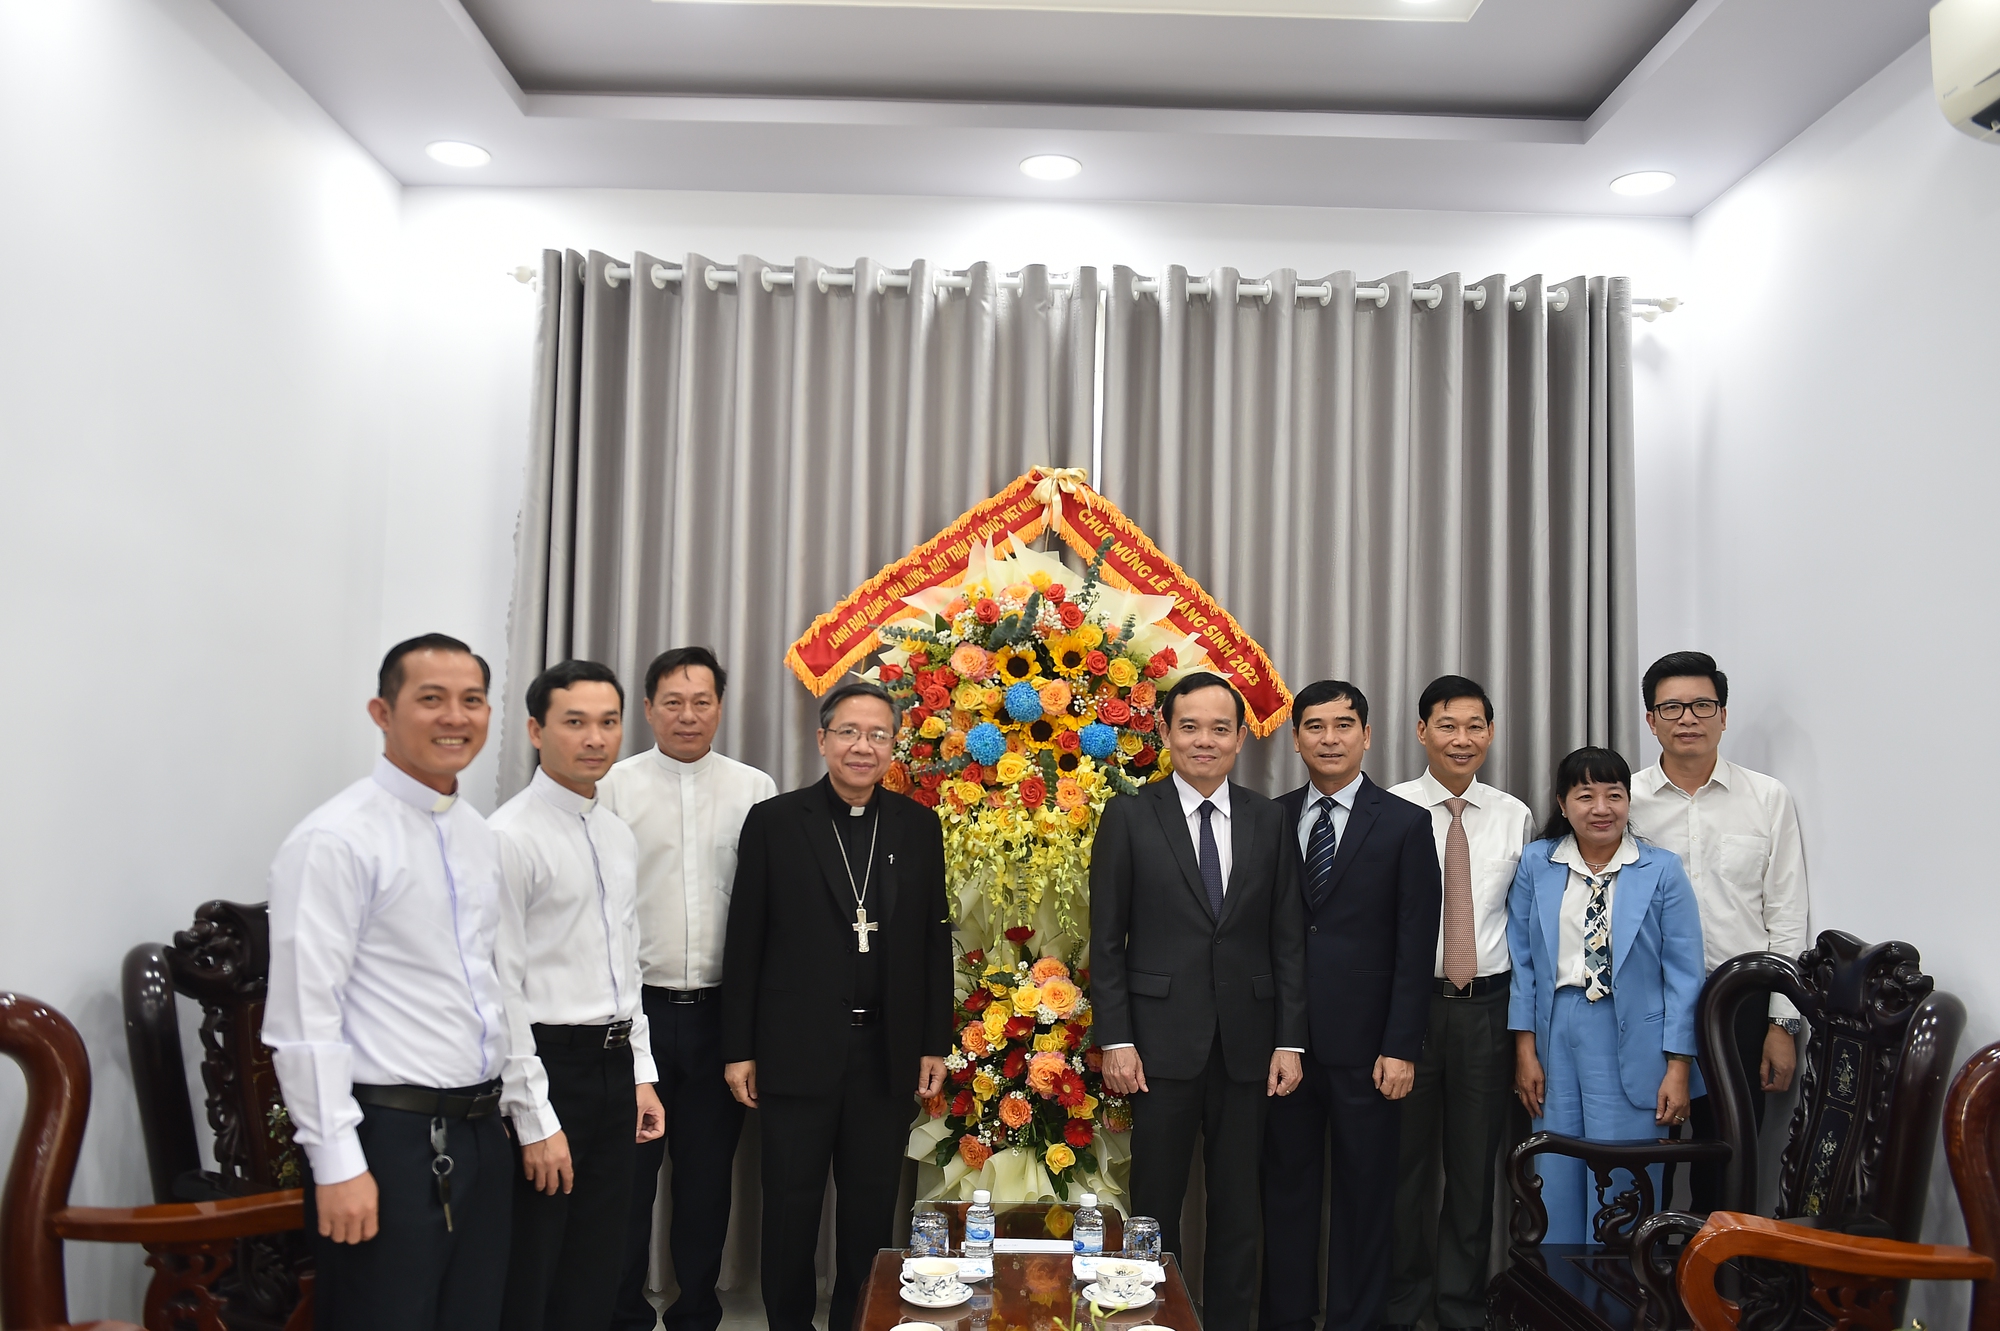 Phó Thủ tướng mong muốn đồng bào công giáo đề cao các giá trị đạo đức, văn hoá tốt đẹp của dân tộc trong các bài giảng và hoạt động tôn giáo - Ảnh: VGP/Hải Minh